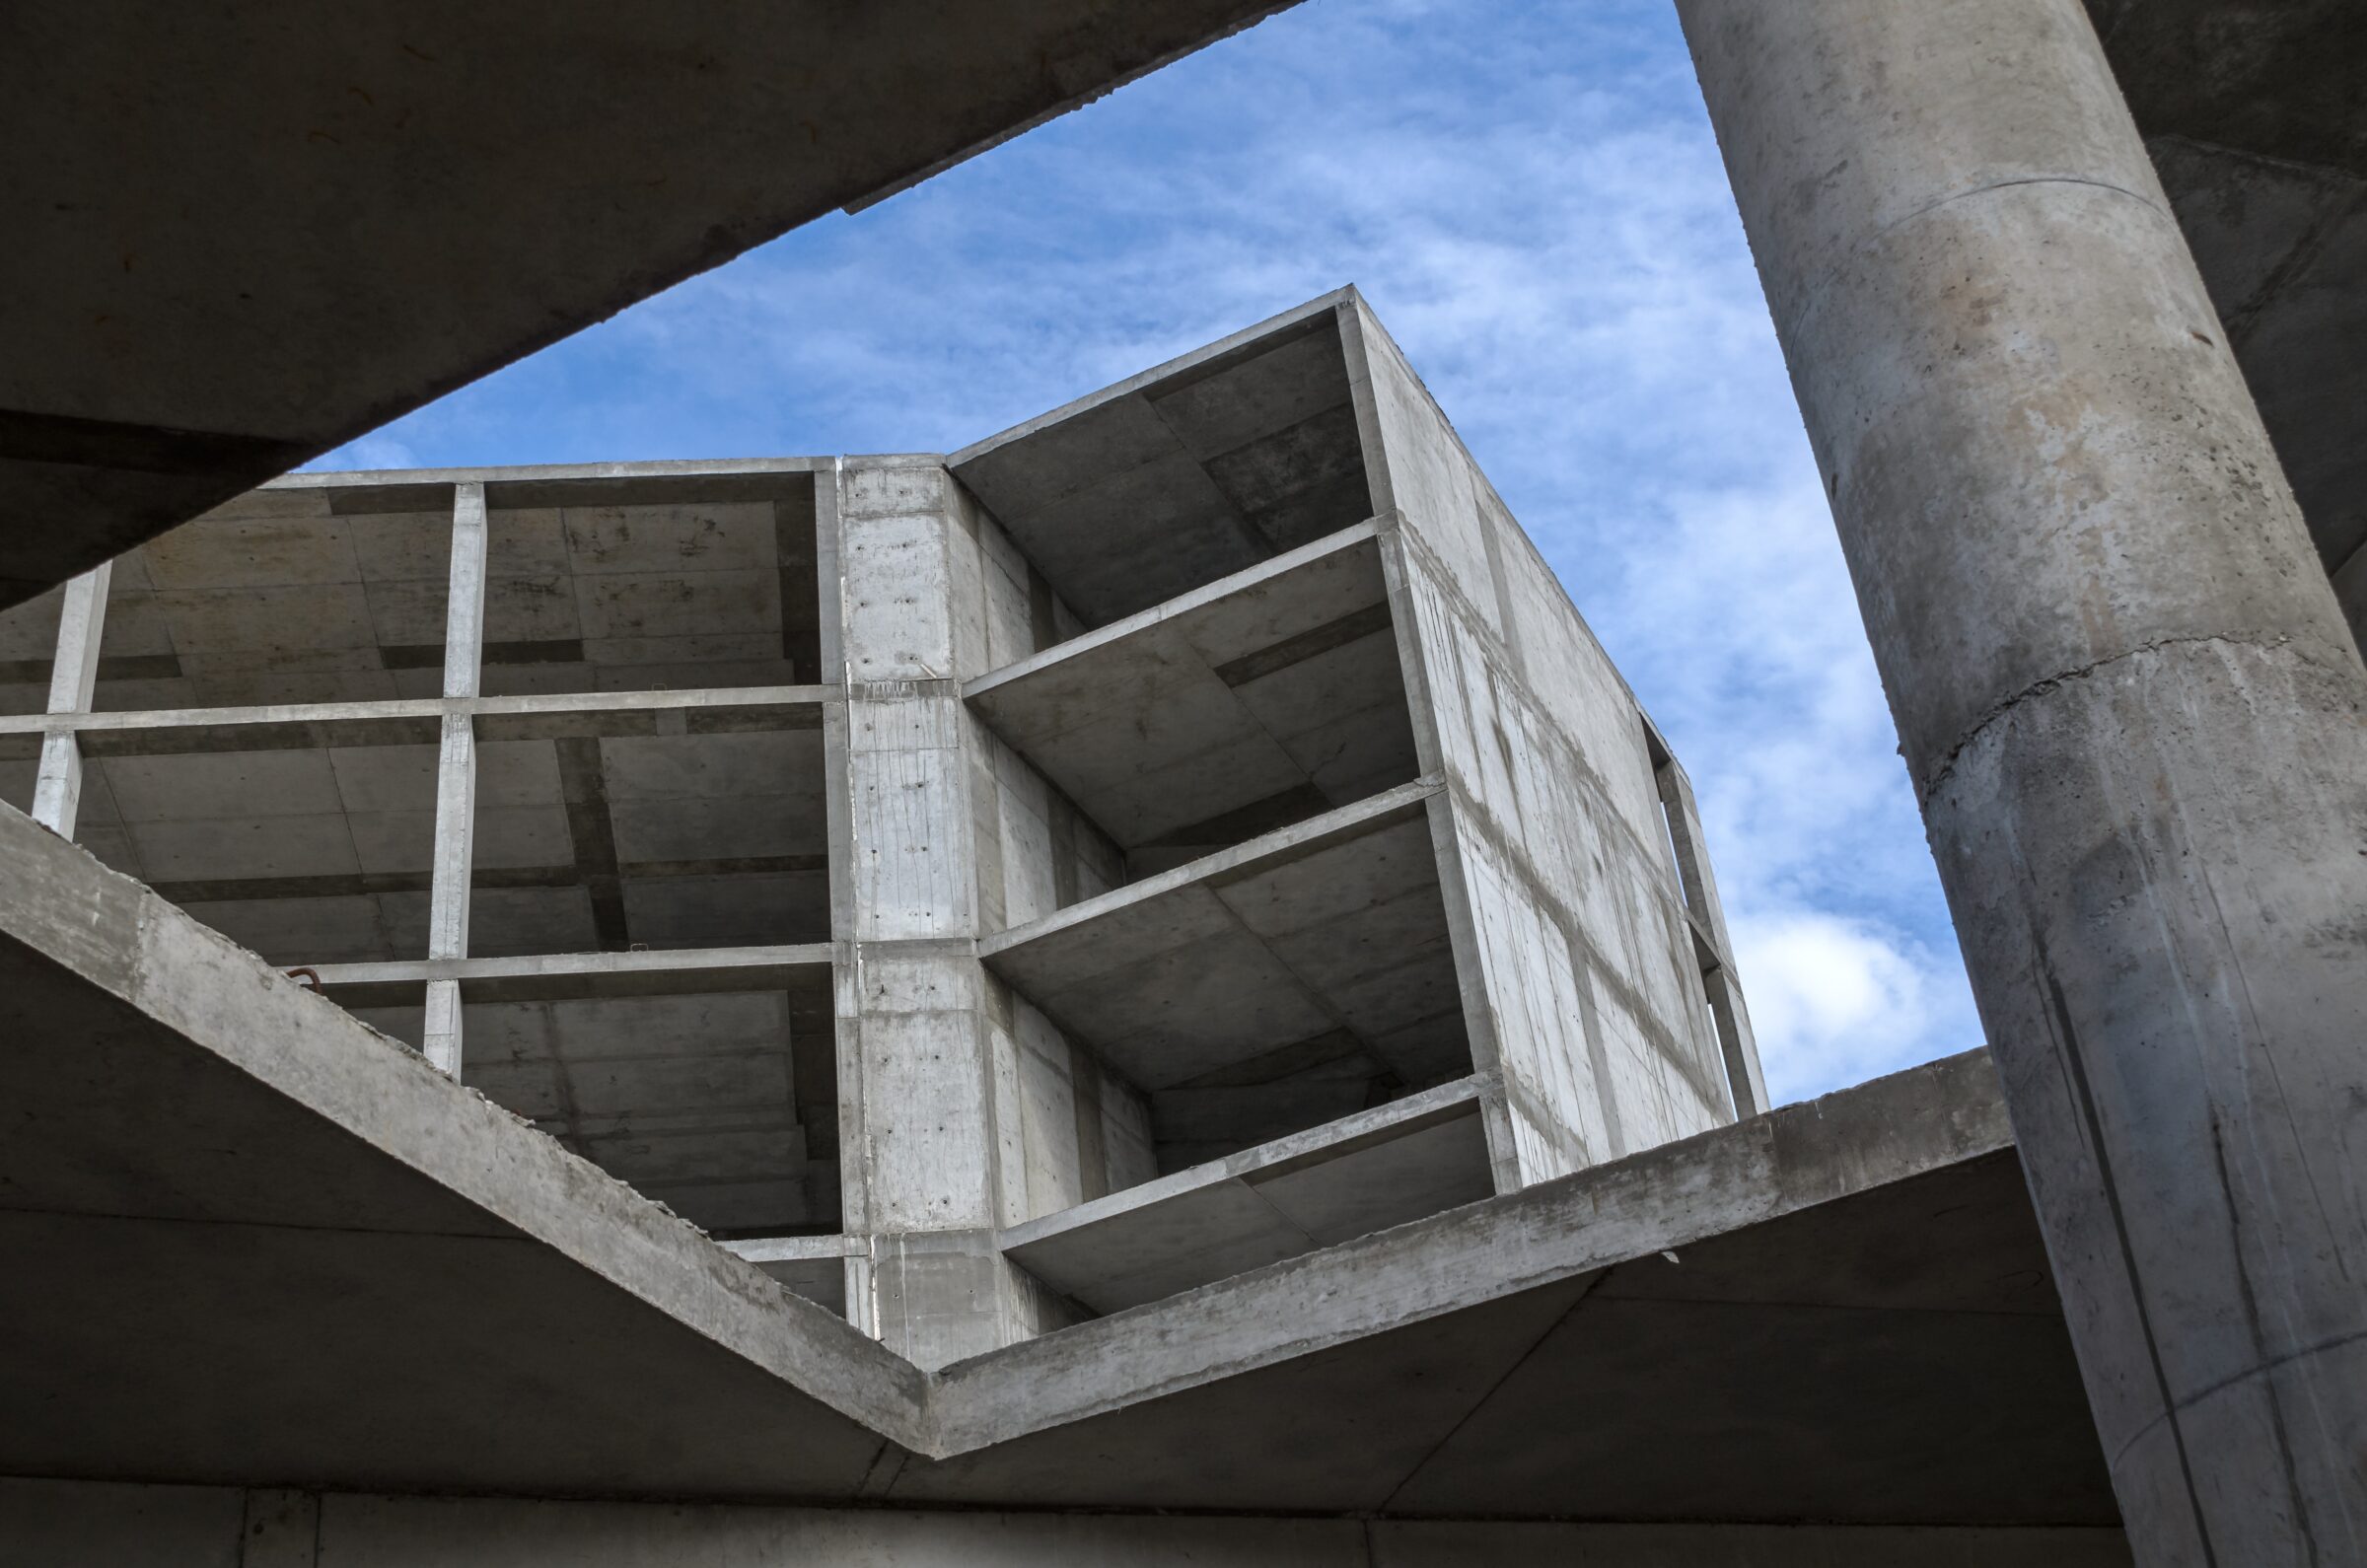 Precast concrete blocks have many advantages.